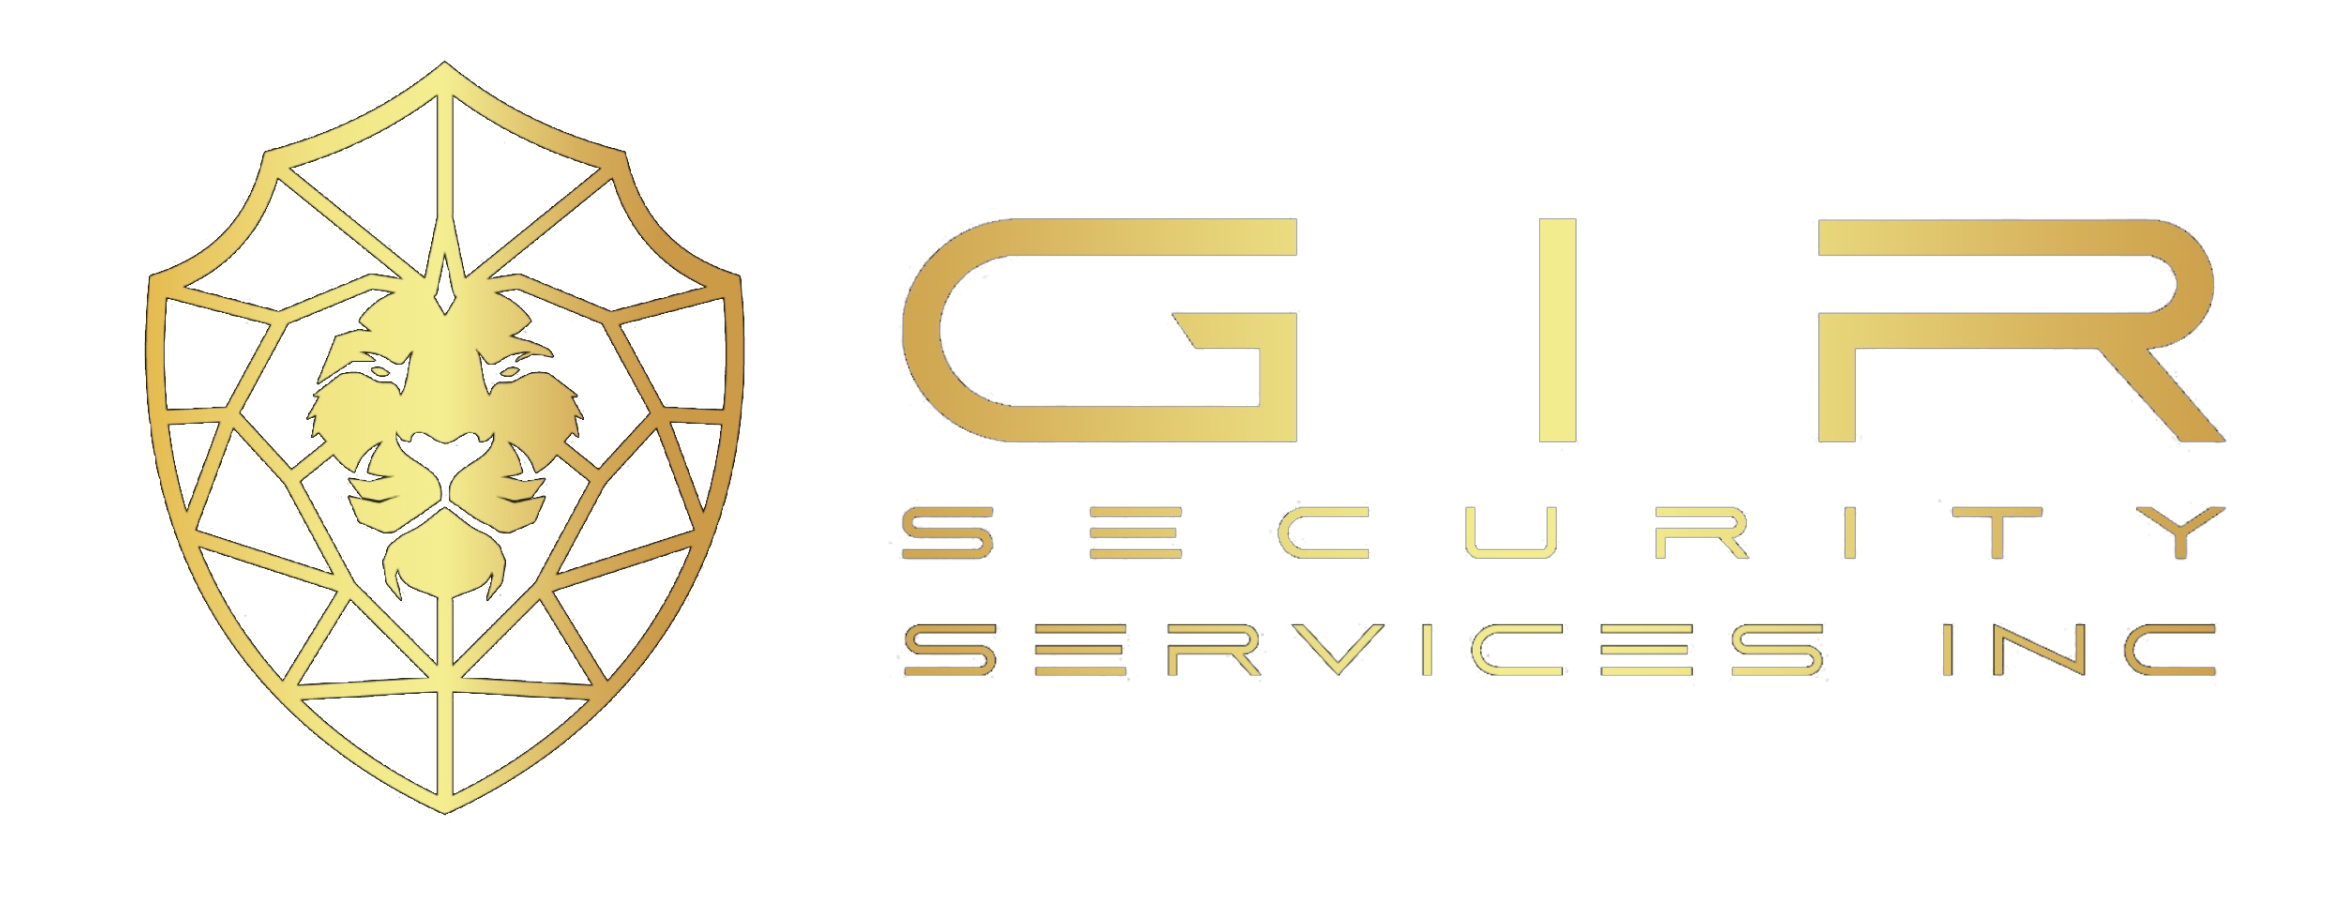 GIR SECURITY SERVICES INC. LOGO